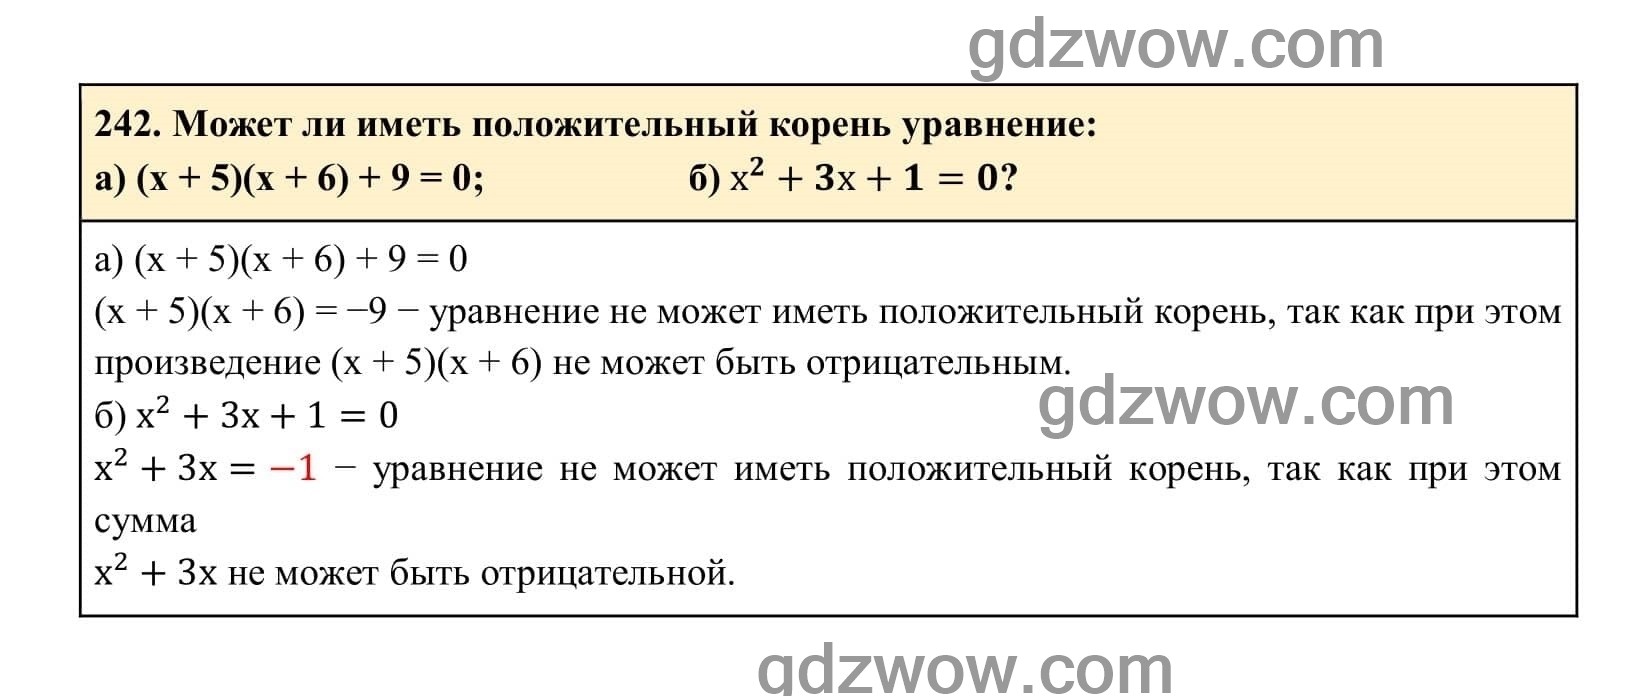 Упражнение 242 - ГДЗ по Алгебре 7 класс Учебник Макарычев (решебник) - GDZwow